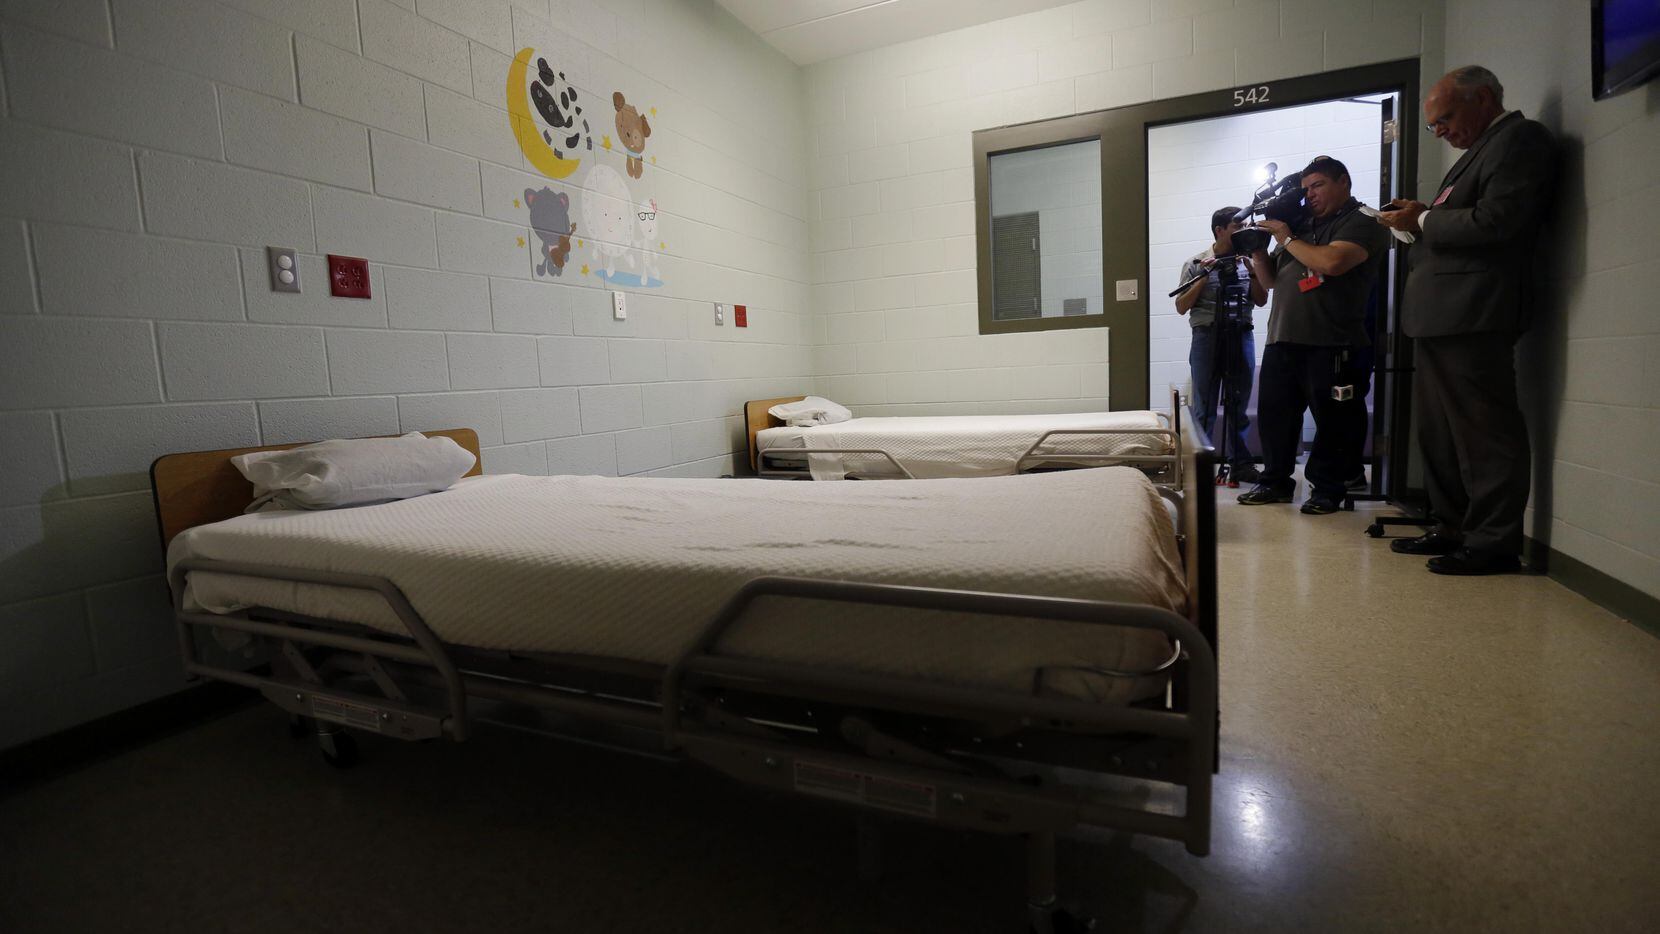 Una habitación en el centro de detenciones Karnes, al sur de Texas.(AP)
